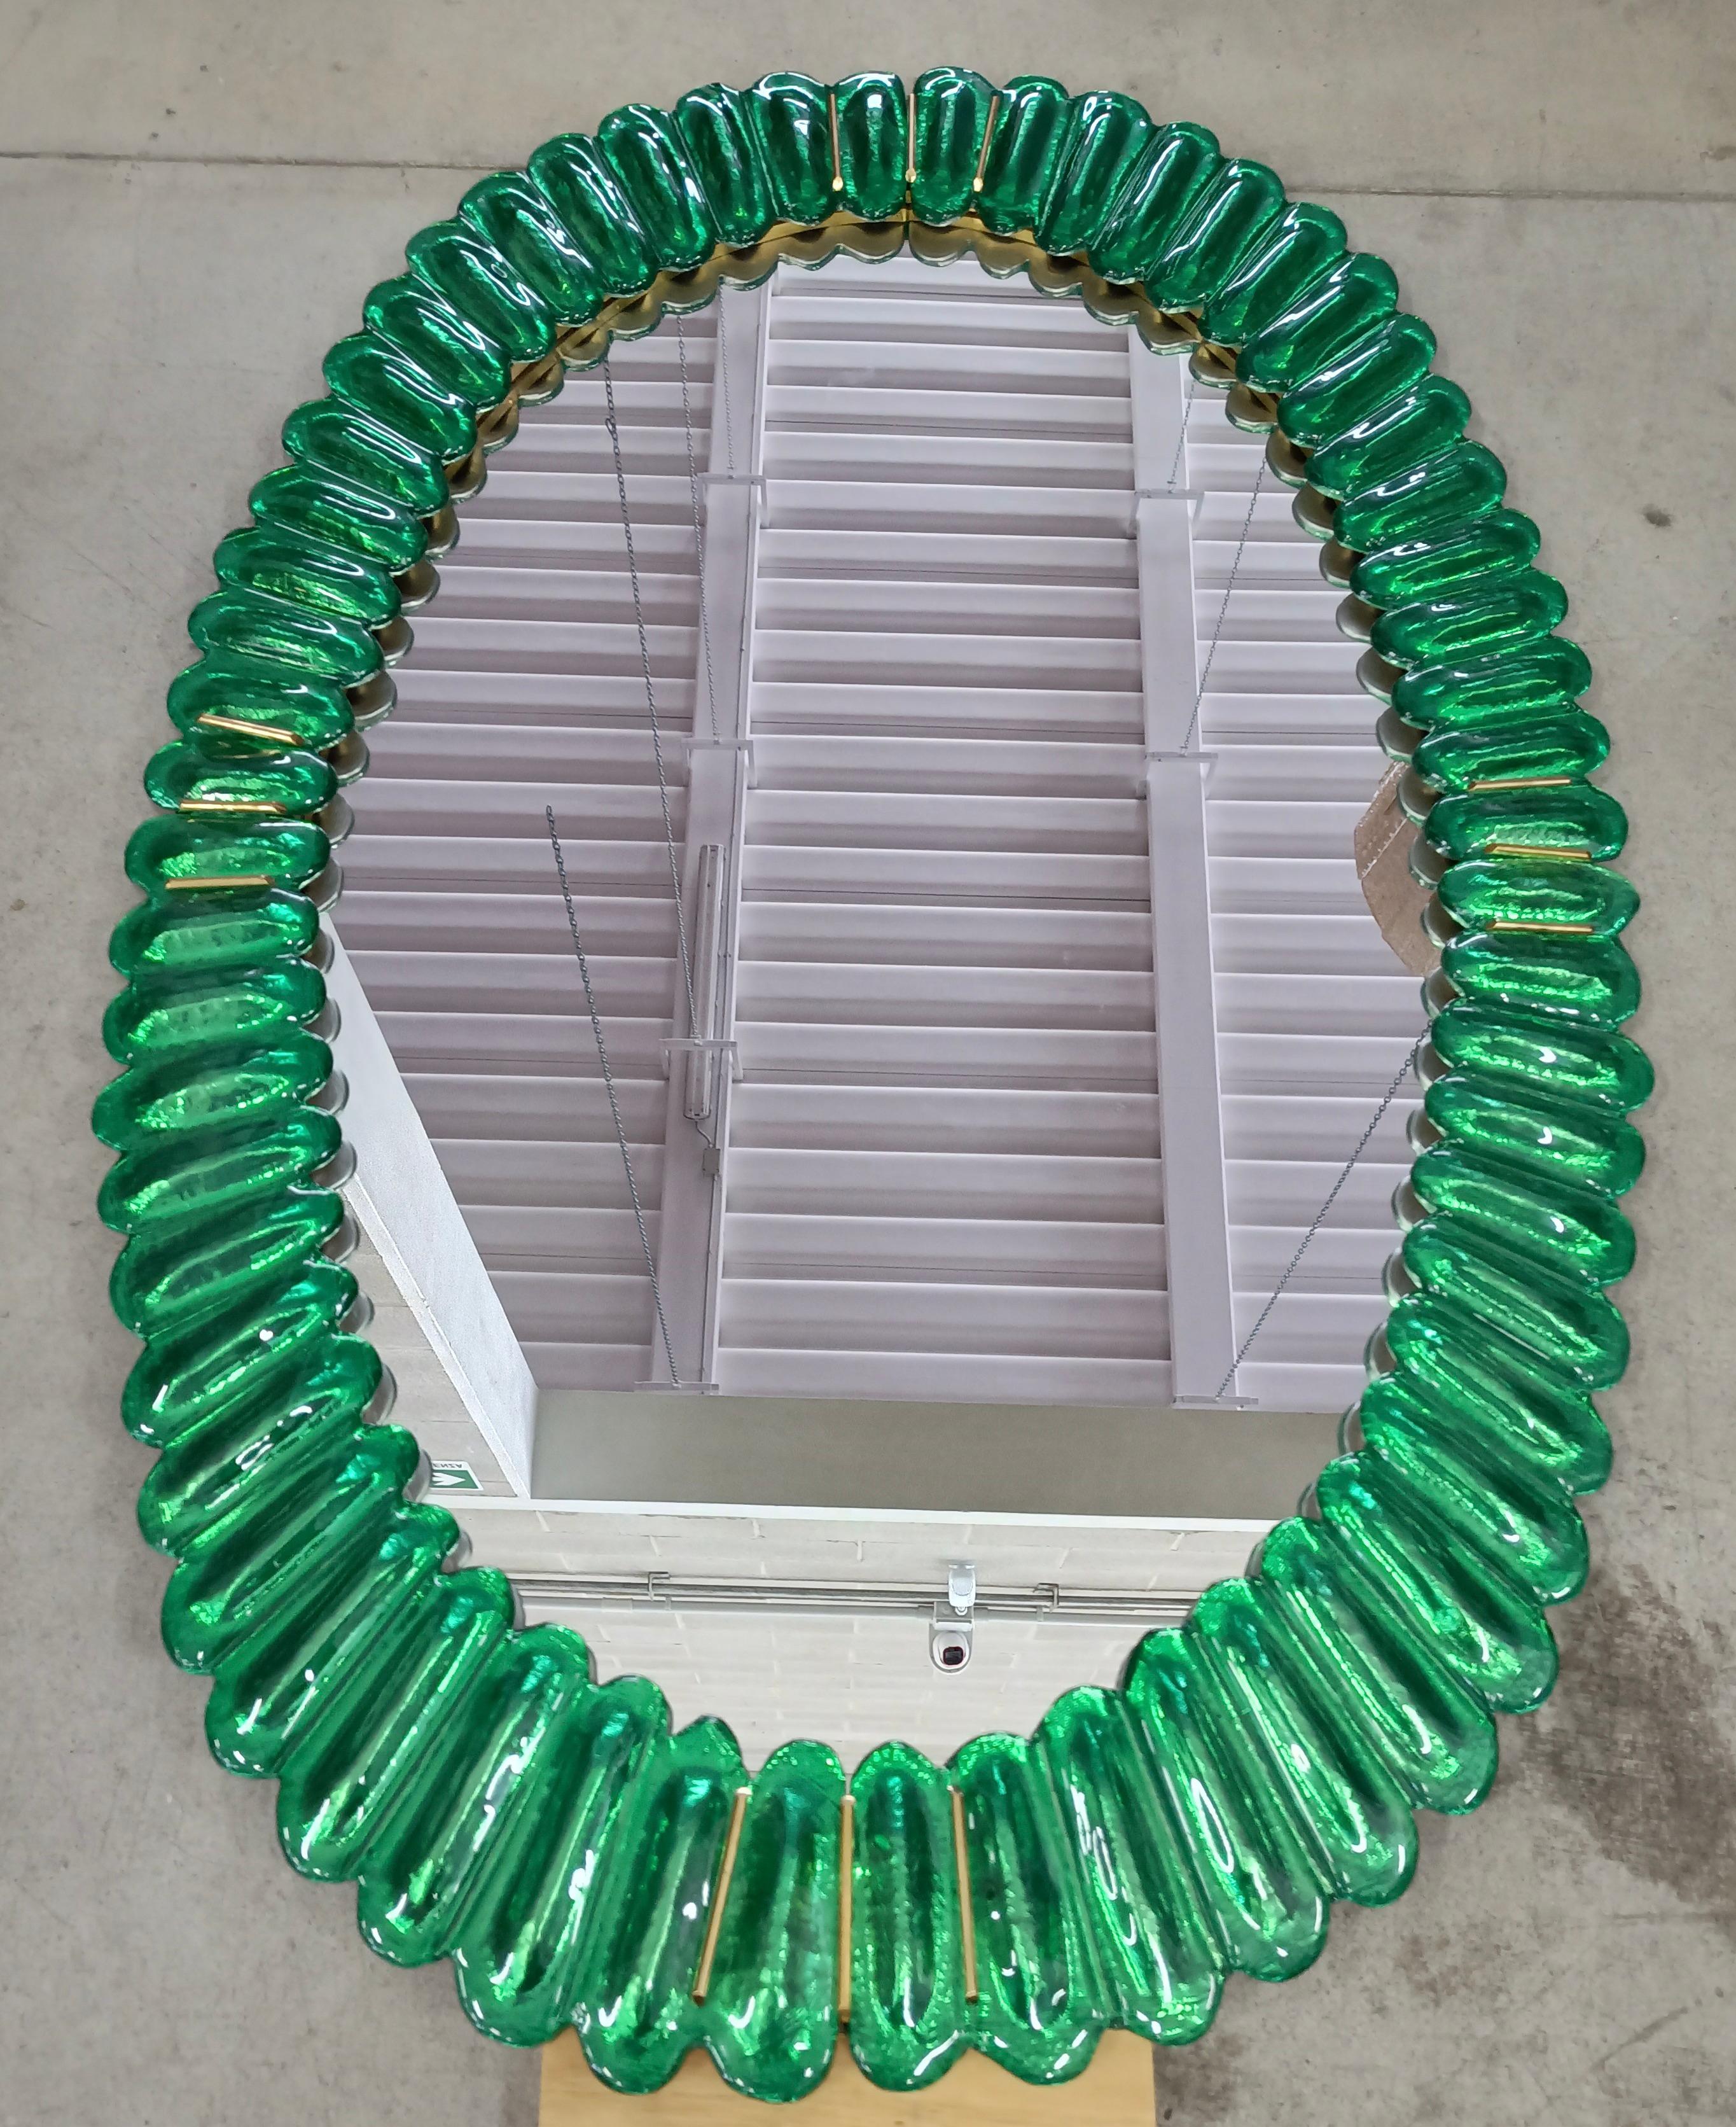 Atemberaubender Spiegel in leuchtendem smaragdfarbenem Murano-Glas, Venedig. Ein Spiegel, der allein Ihr Zuhause einrichtet.

Der Spiegel hat eine Rückwand aus Holz, auf der vier smaragdfarbene Murano-Glasteile montiert sind, die ein Oval bilden,